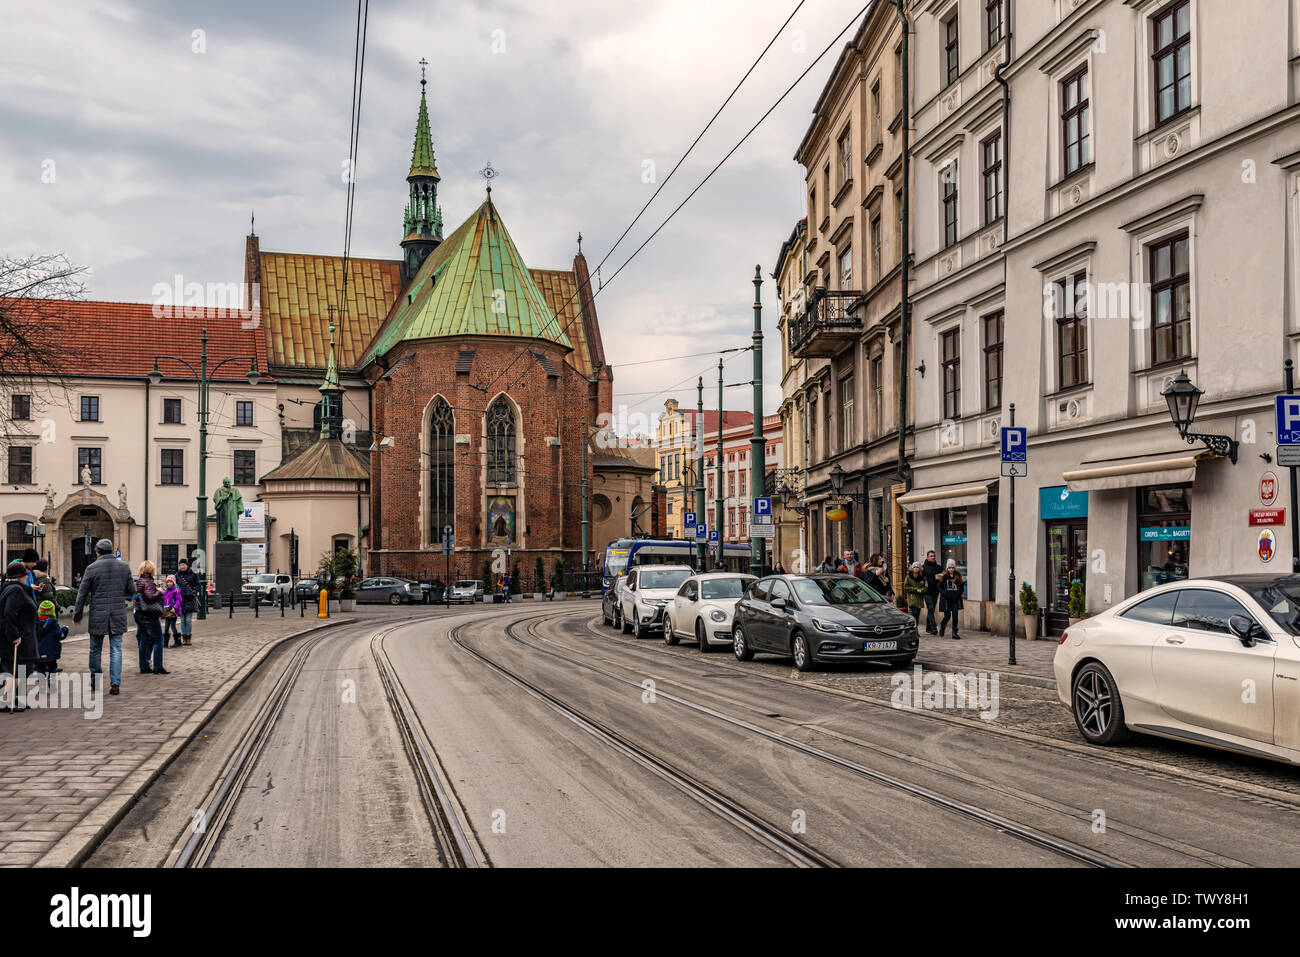 Cracovie, Pologne - Dec 2, 2019 : vue sur la rue menant à l'Église Franciscaine Cracovie en Pologne. Banque D'Images